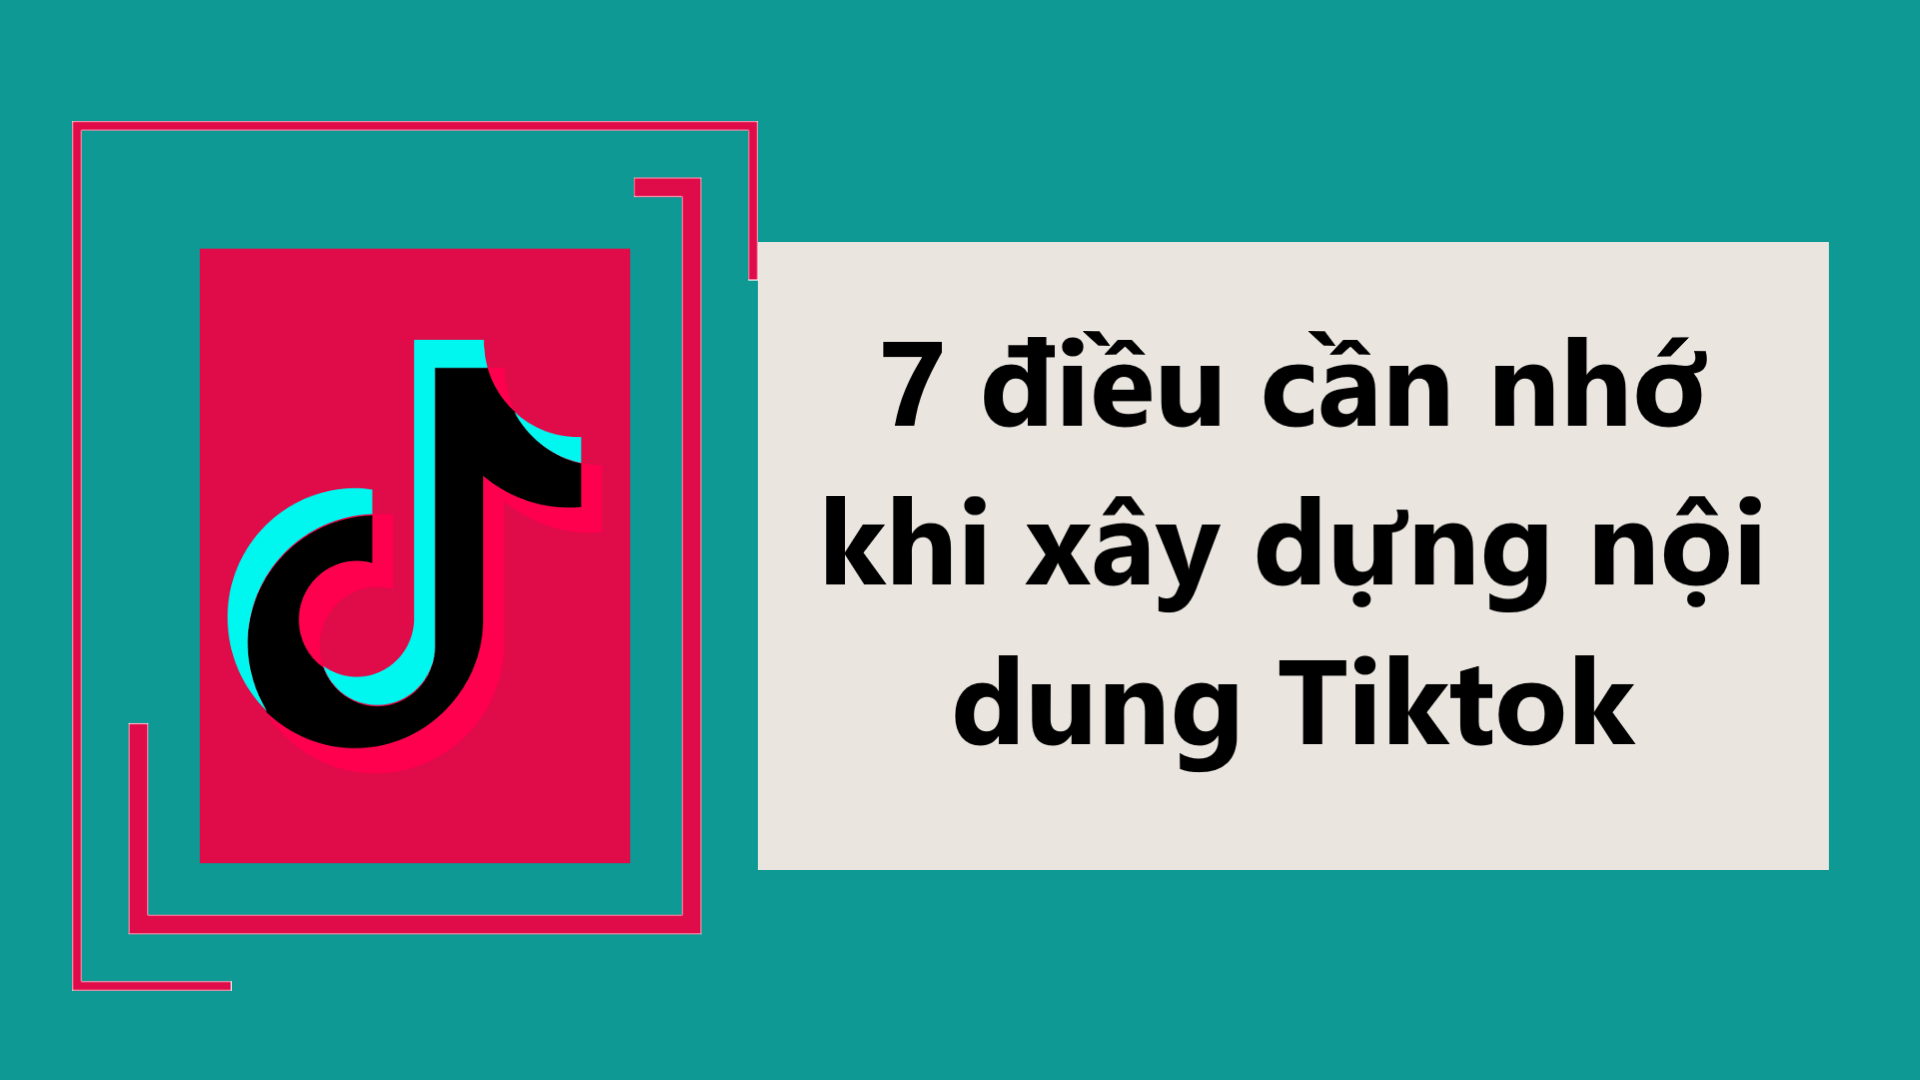 Nội dung chất lượng chính là yếu tố quan trọng hàng đầu để bạn xây kênh TikTok